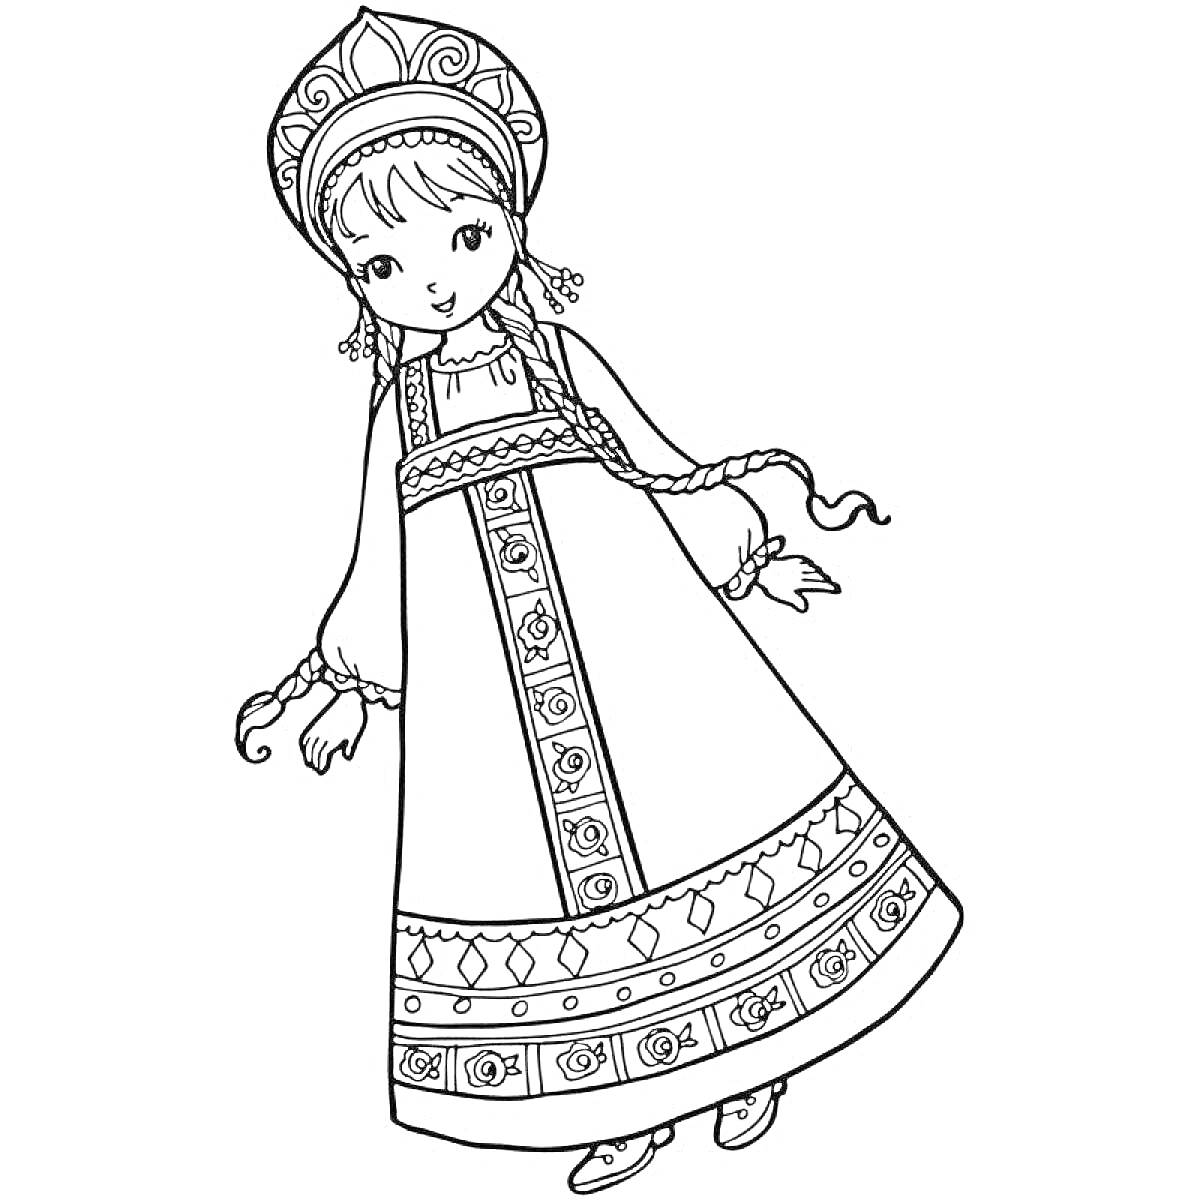 Раскраска Девочка в русском народном костюме с кокошником и сарафаном, украшенными узорами